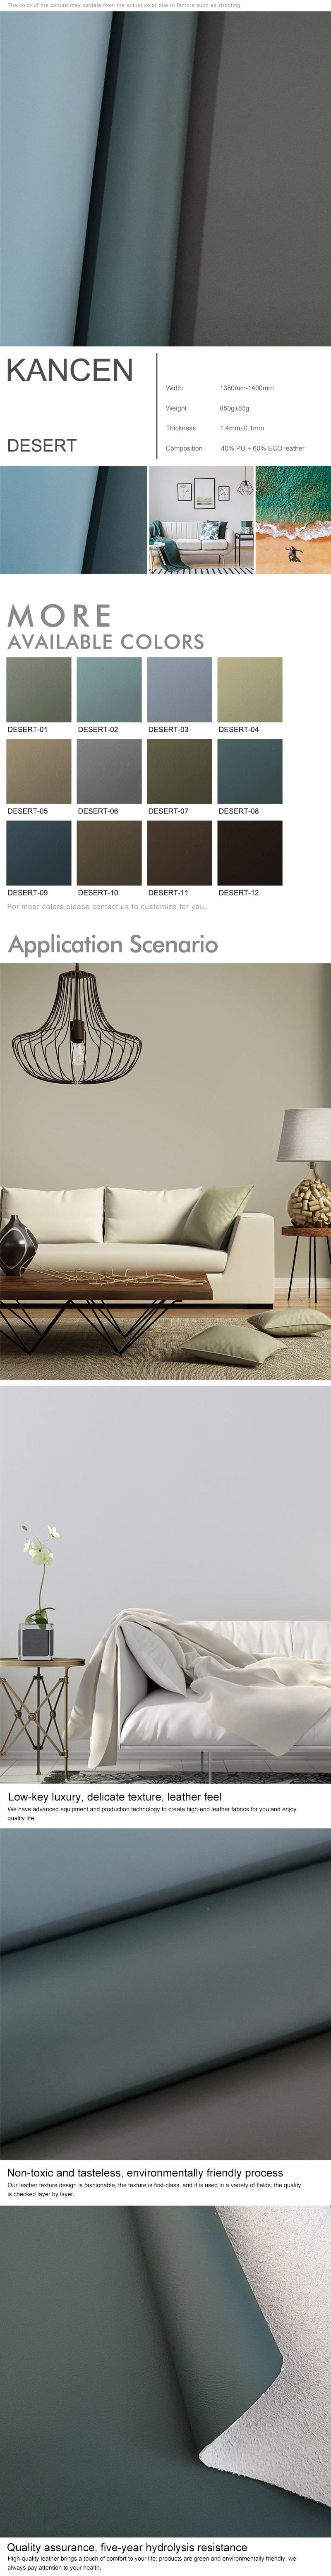 Commercial Sofa PU Manufacturer - KANCEN